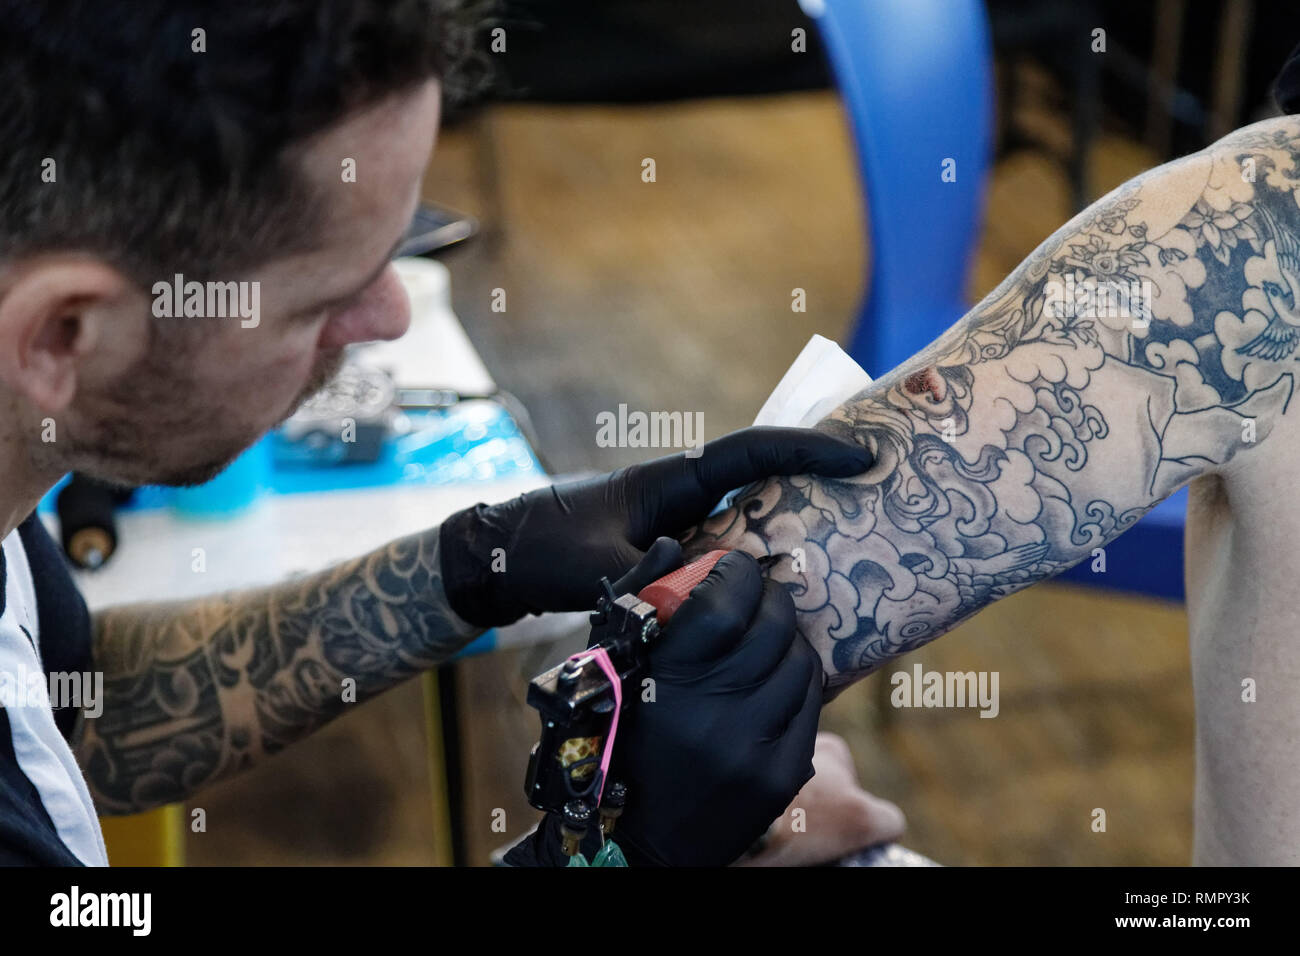 París, Francia. 15 Feb, 2019. Artista, Yoni Silber durante la 9ª edición del Mondial du Tatouage (Mundo tatuaje) el 15 de febrero de 2019 en la Grande Halle de la Villette, en París, Francia. Crédito: Bernard Menigault/Alamy Live News Foto de stock